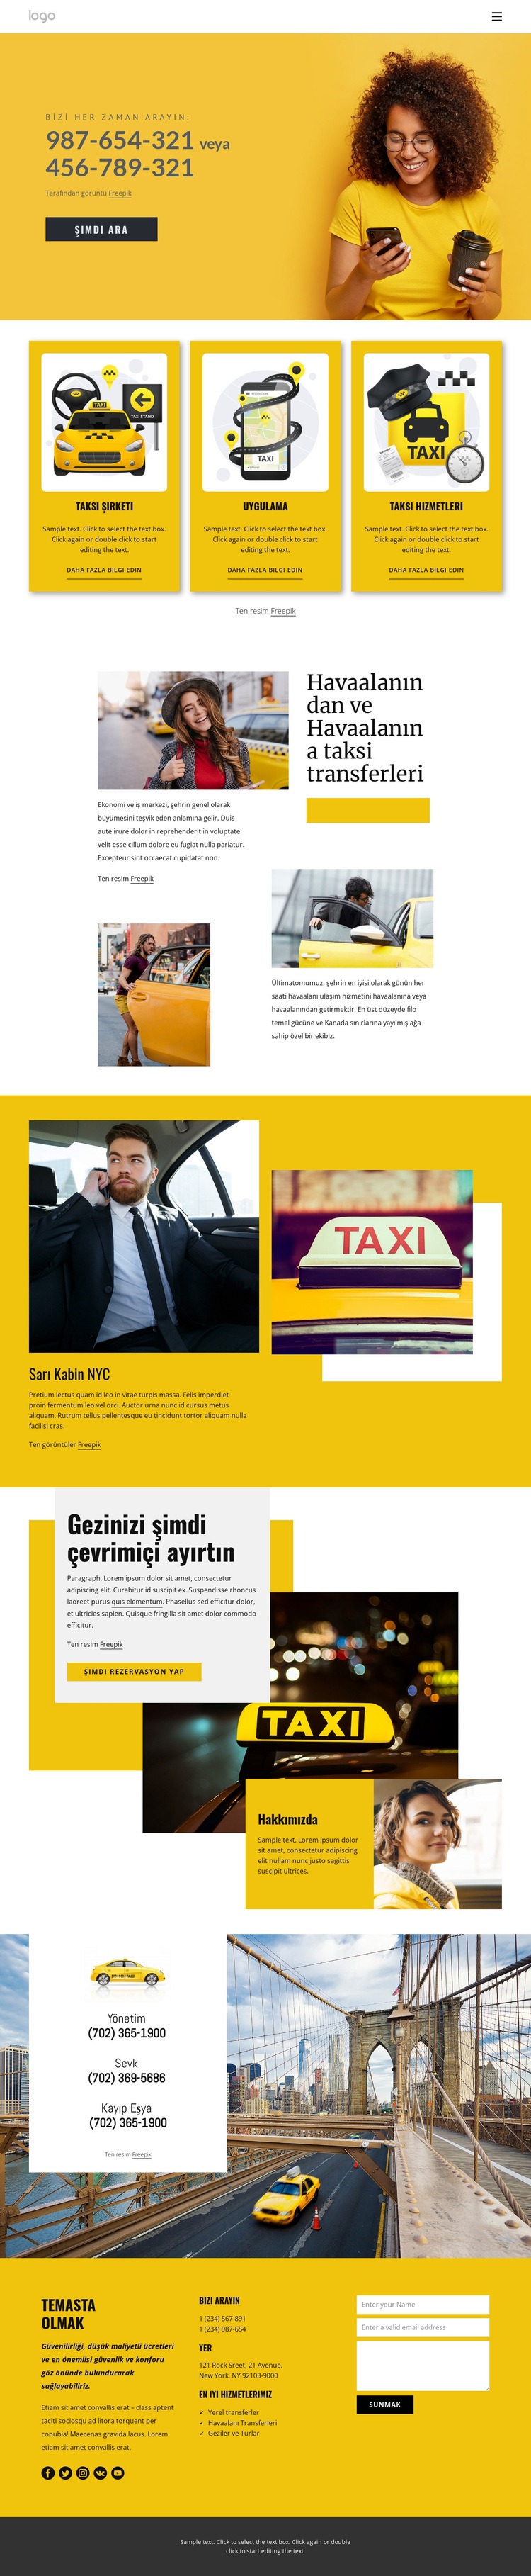 Kaliteli taksi hizmeti Web Sitesi Mockup'ı